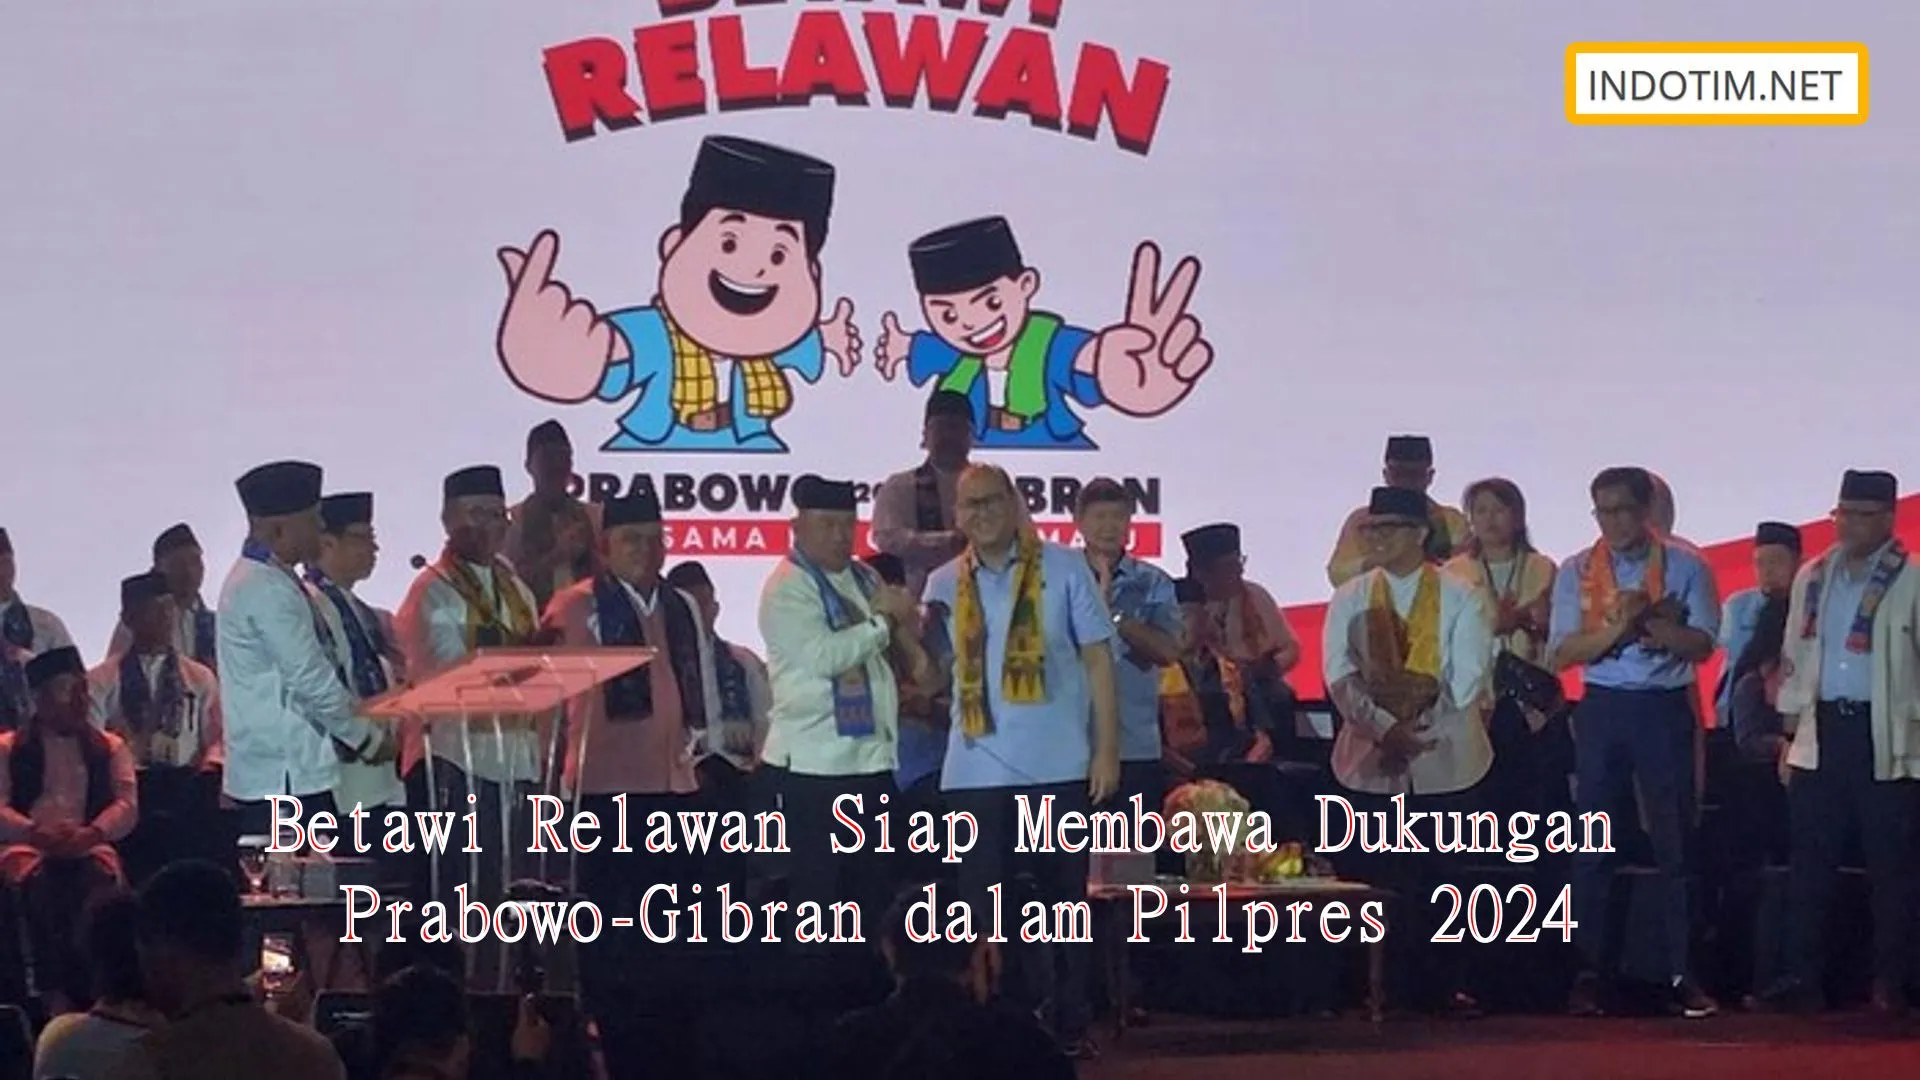 Betawi Relawan Siap Membawa Dukungan Prabowo-Gibran dalam Pilpres 2024